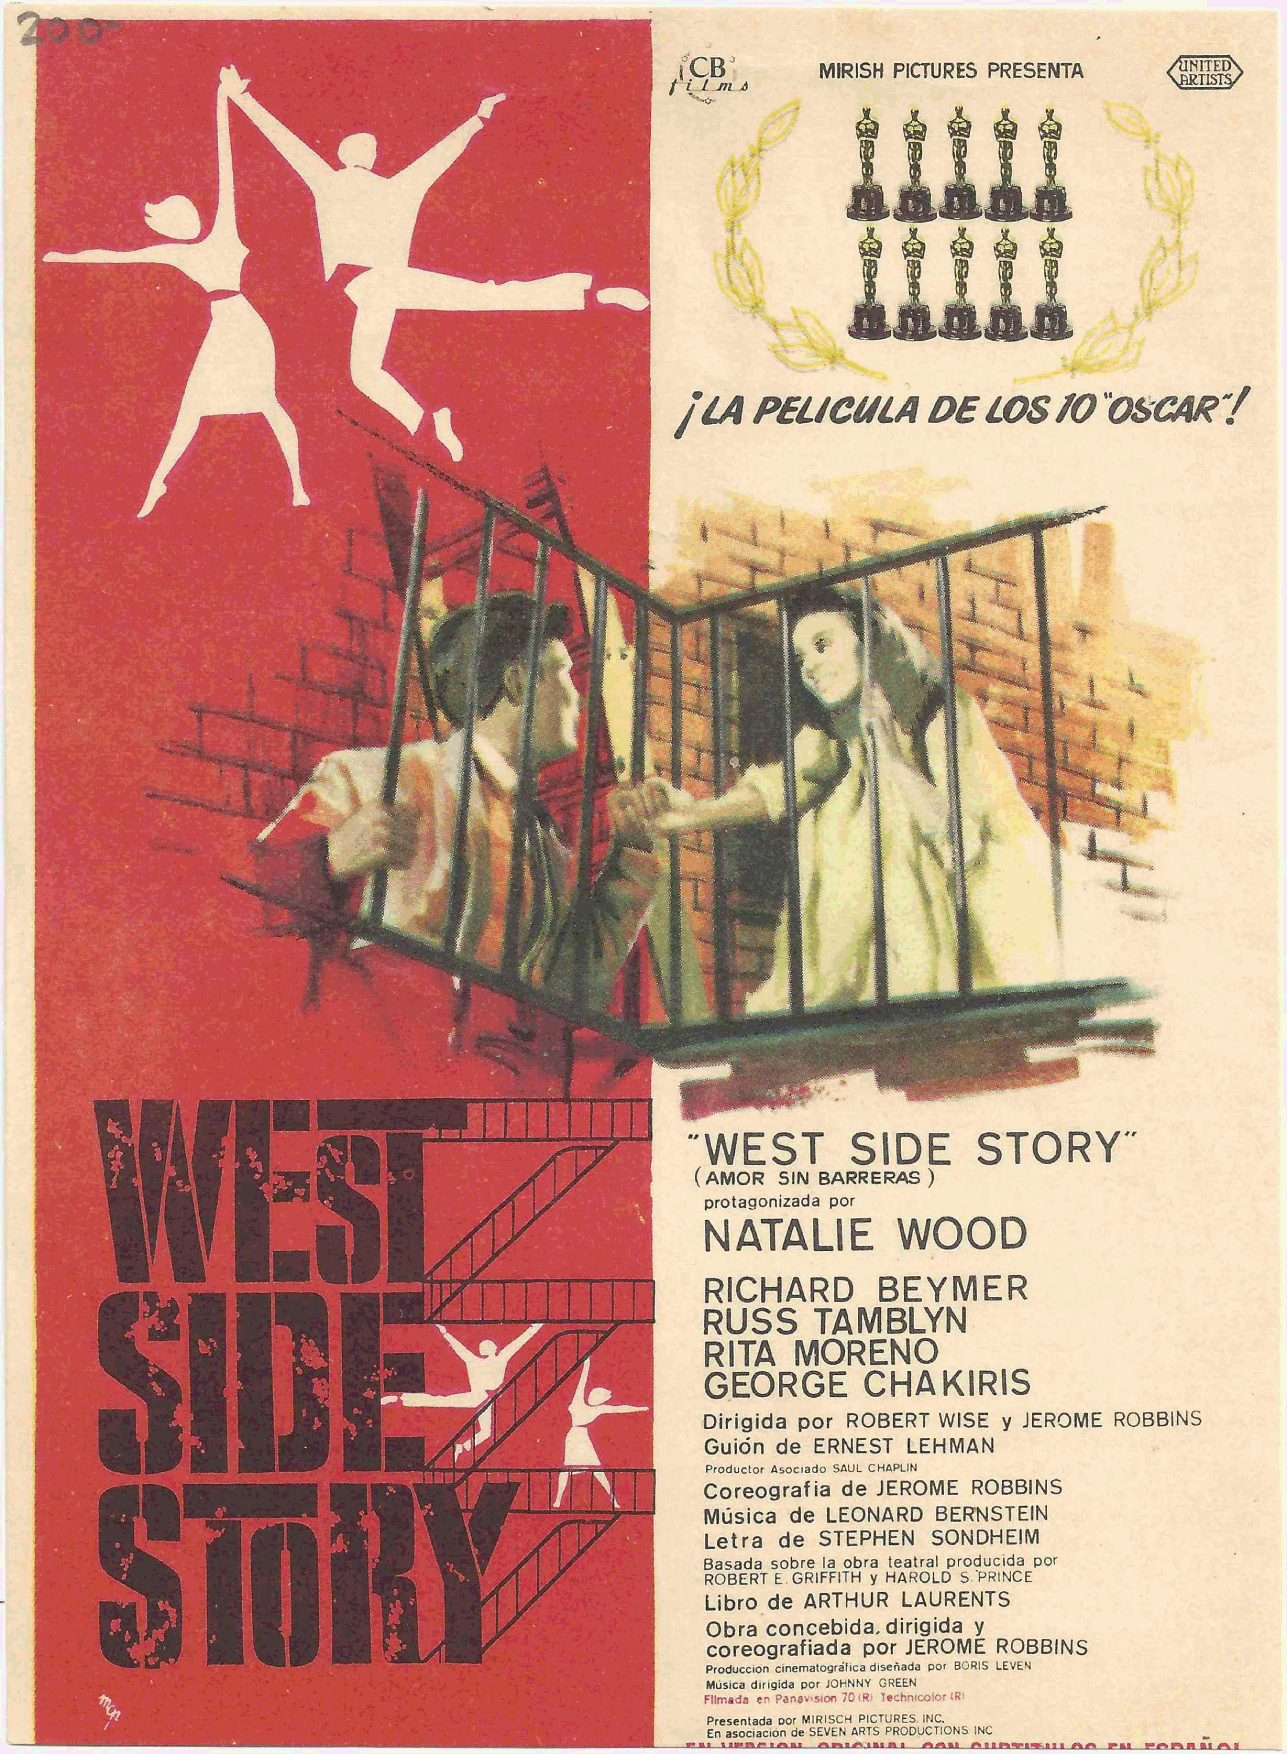 West Side Story in Spain